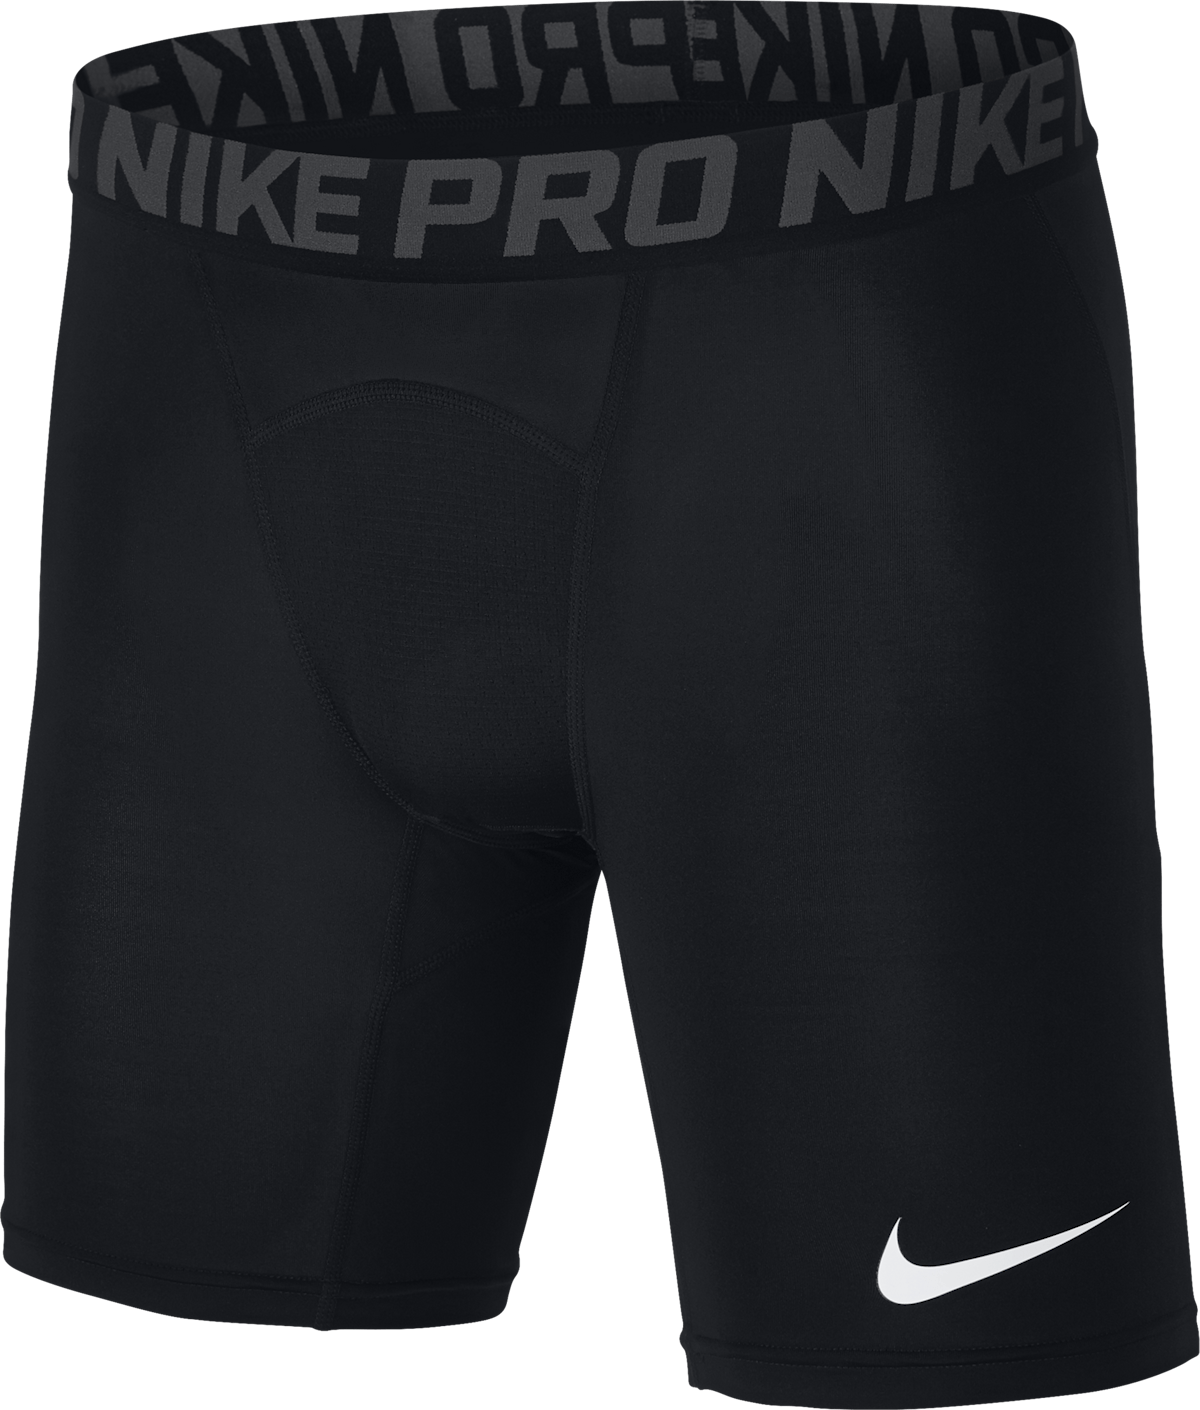 Pro Training Shorts Black/Anthracite/White